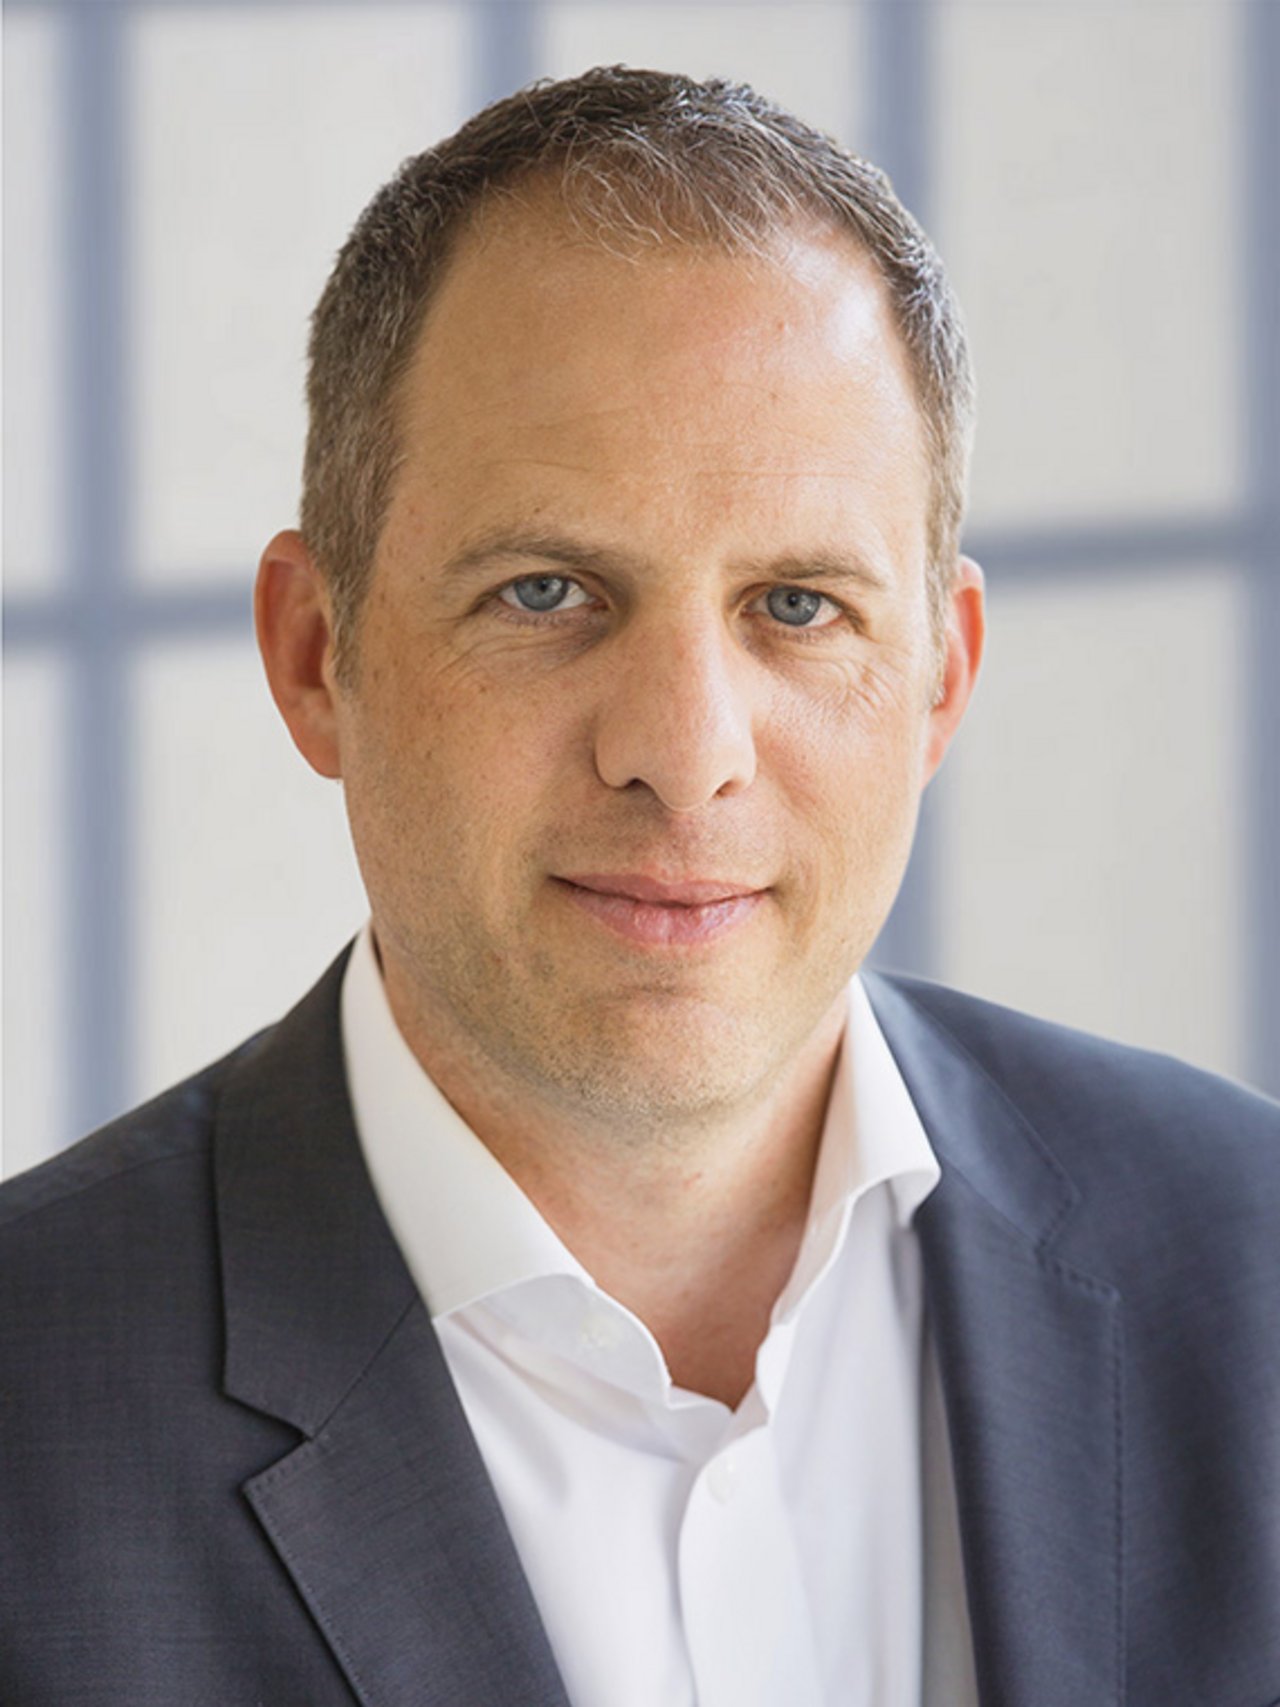 Philipp Zgraggen übernimmt den Vorsitz der Volg-Geschäftsführung am 1. September 2019. Zgraggen war bis vor einem Jahr bei Aldi tätig und arbeitet sich seither bei Volg ein.